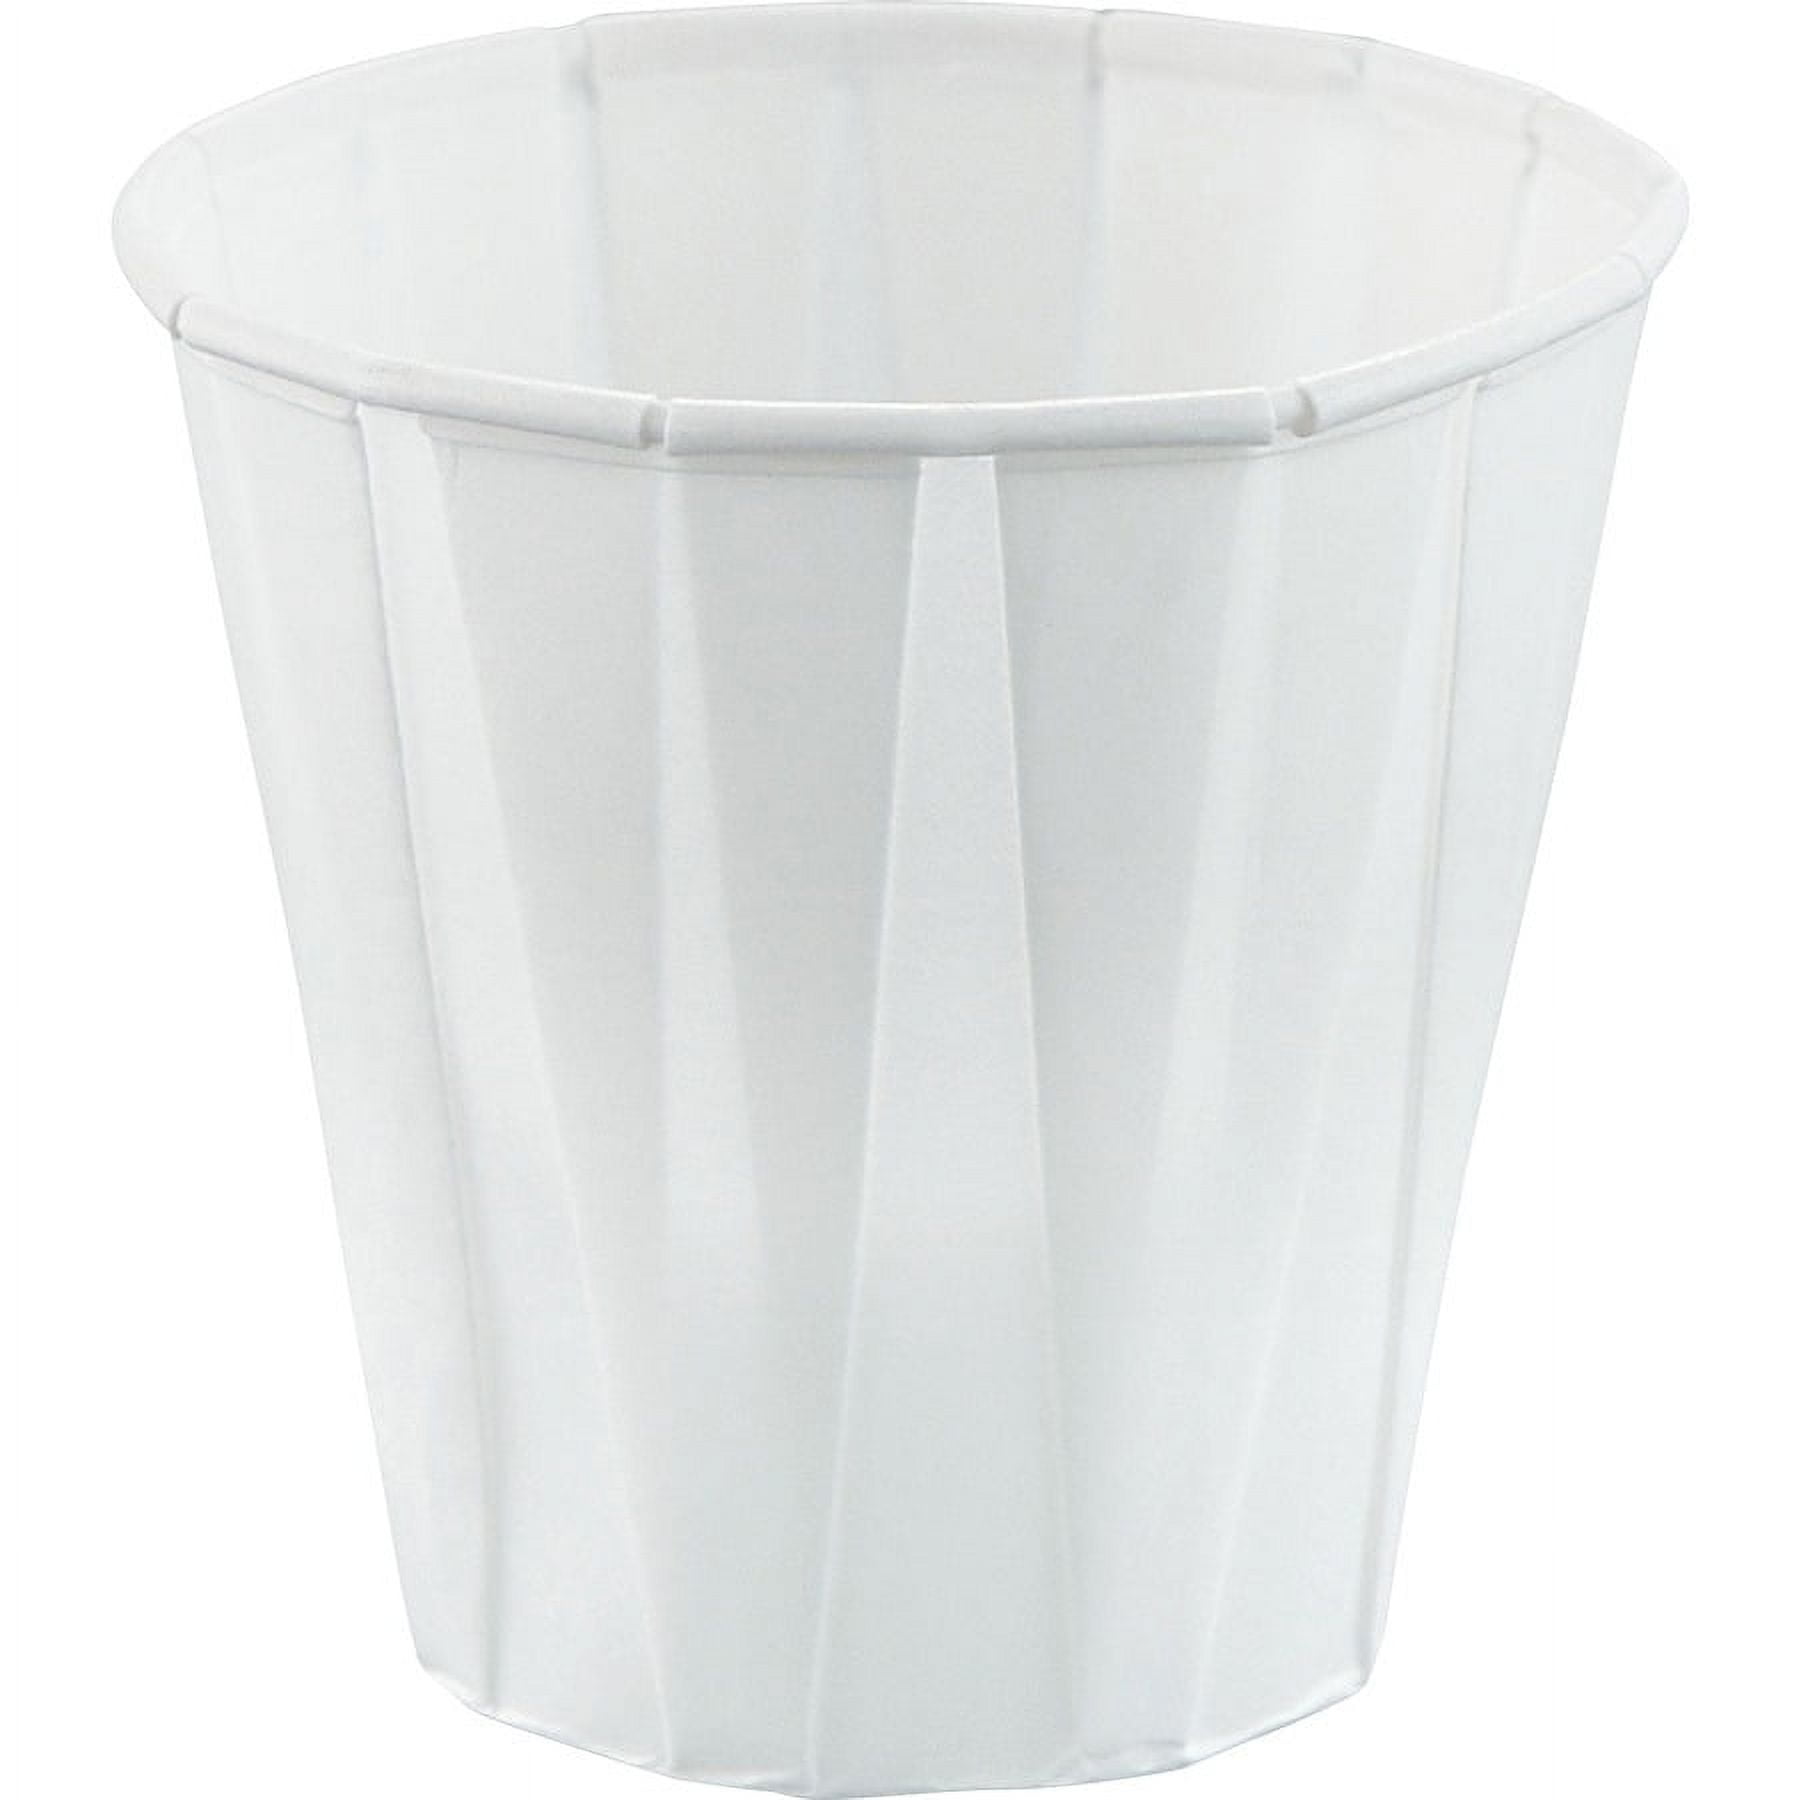 Solo White Plastic Cups, 3 oz - Kroger